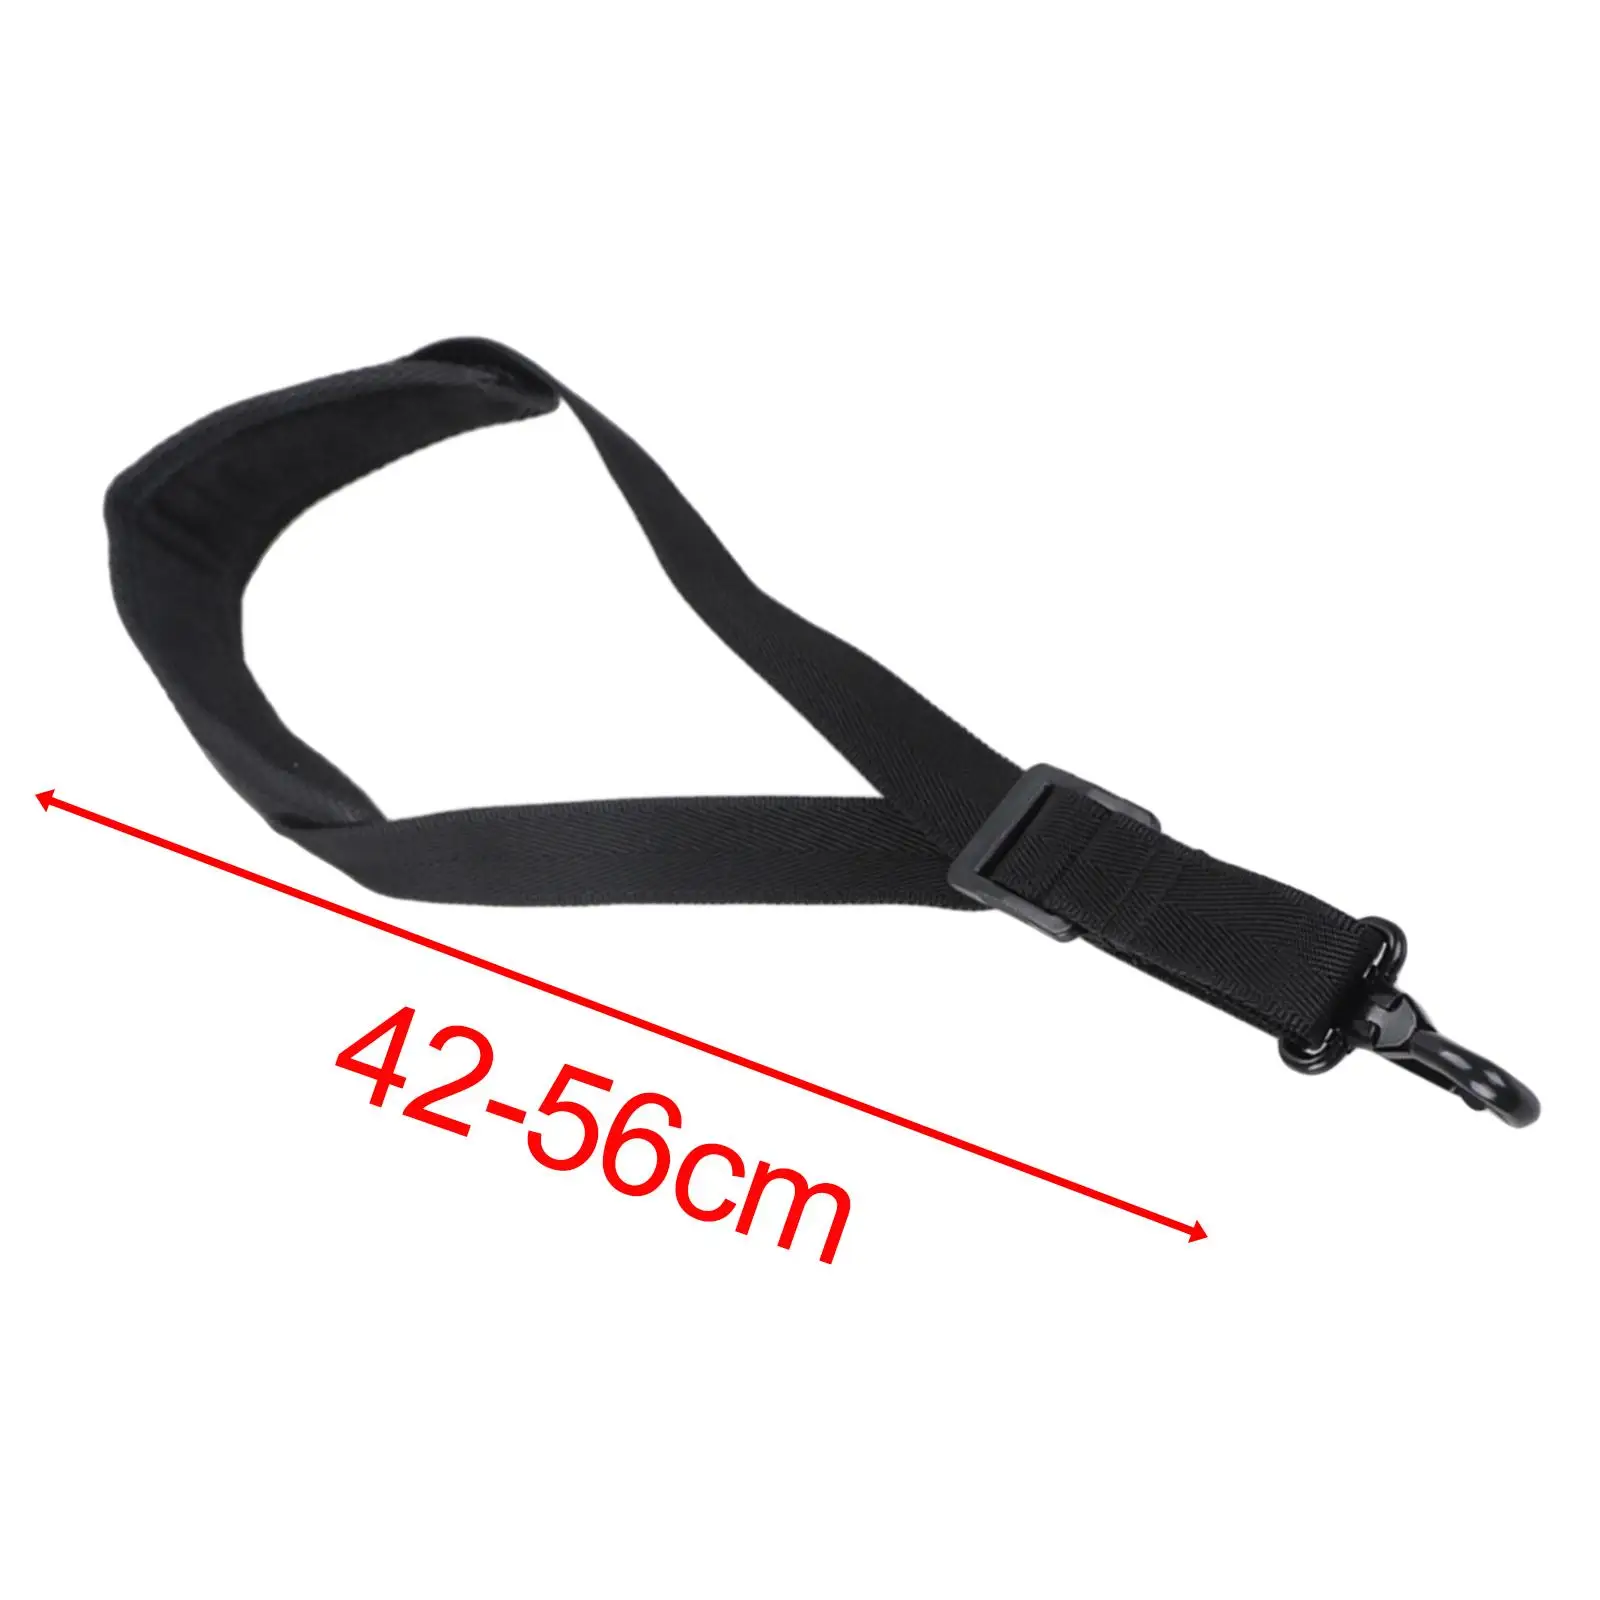 Adjustable Shoulder Strap Lengthened Neck Strap for Wind Instrument